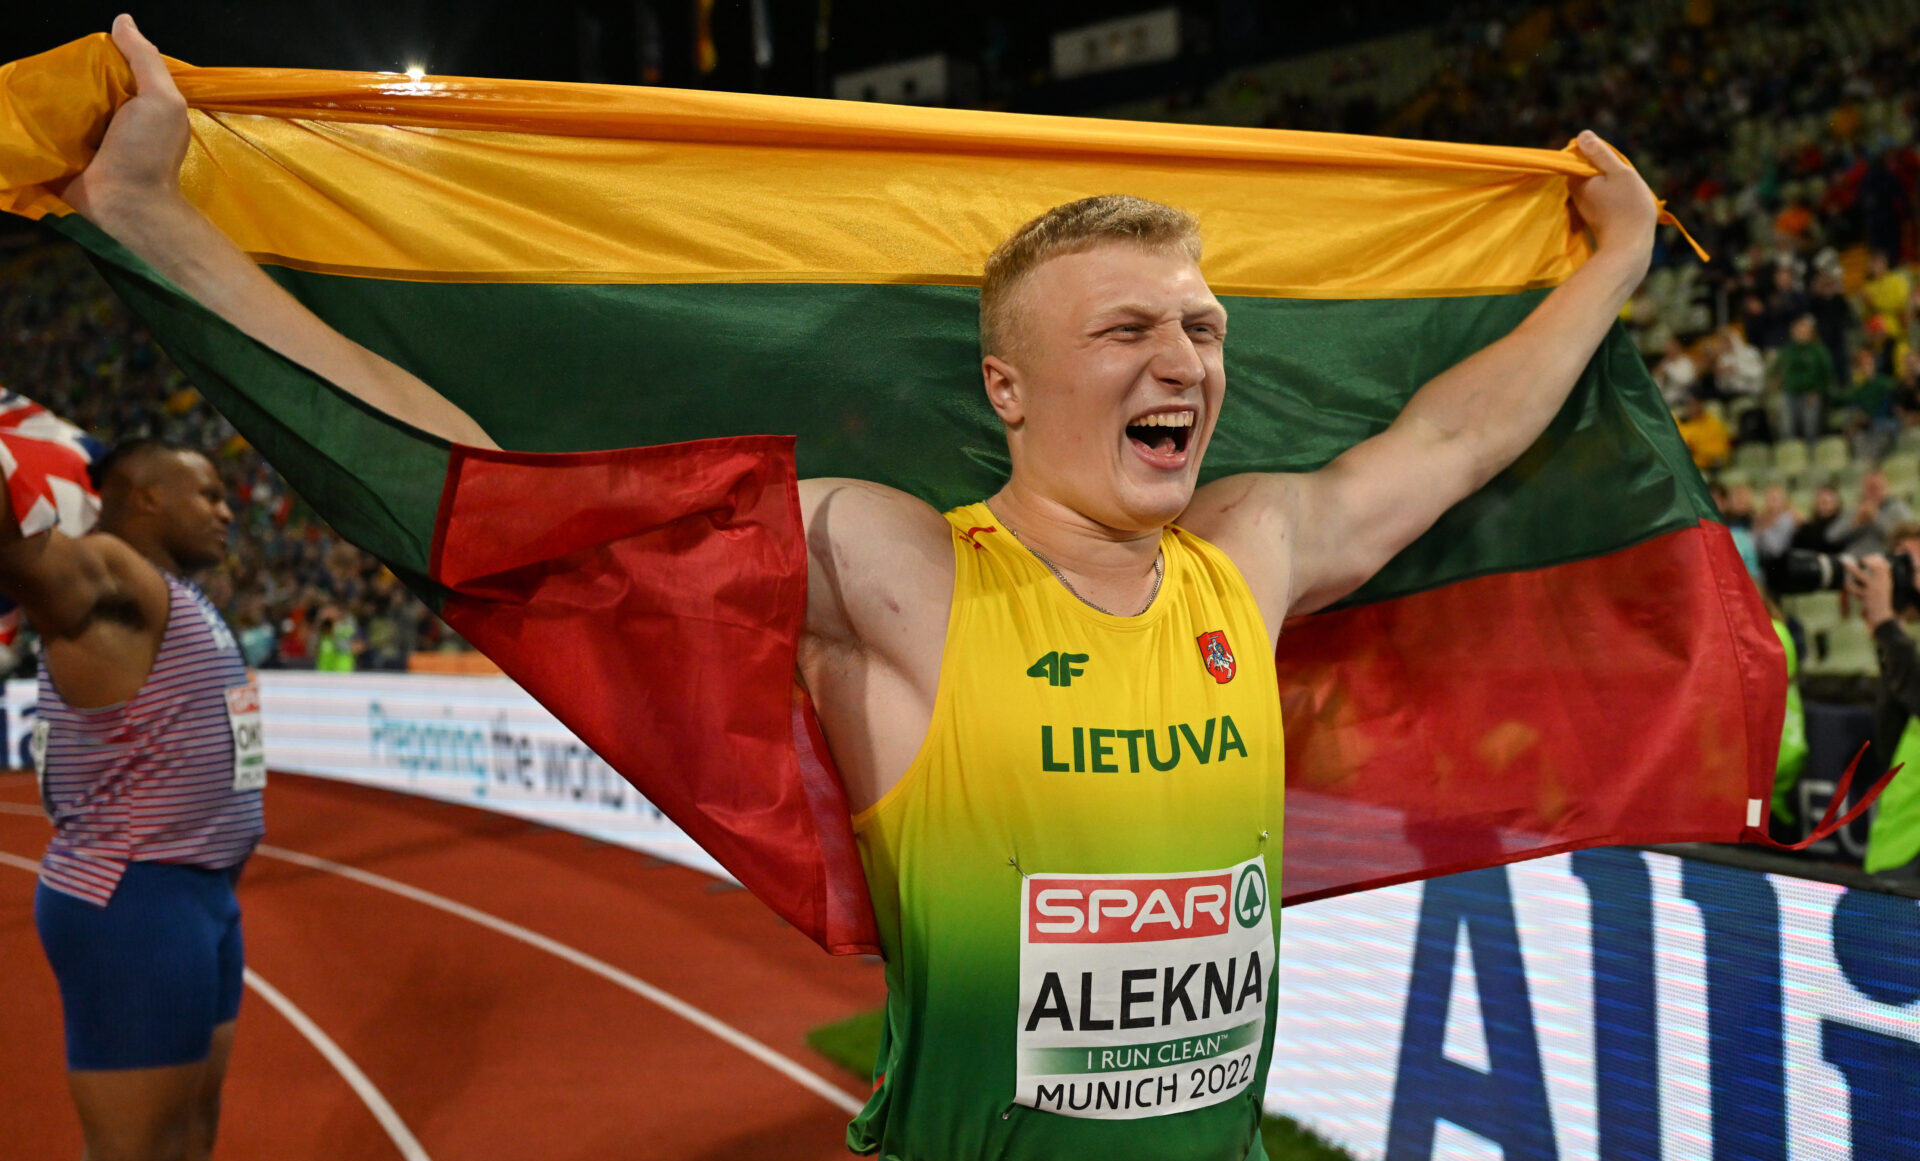 Литовец Алекна побил мировой рекорд в метании диска, державшийся 38 лет